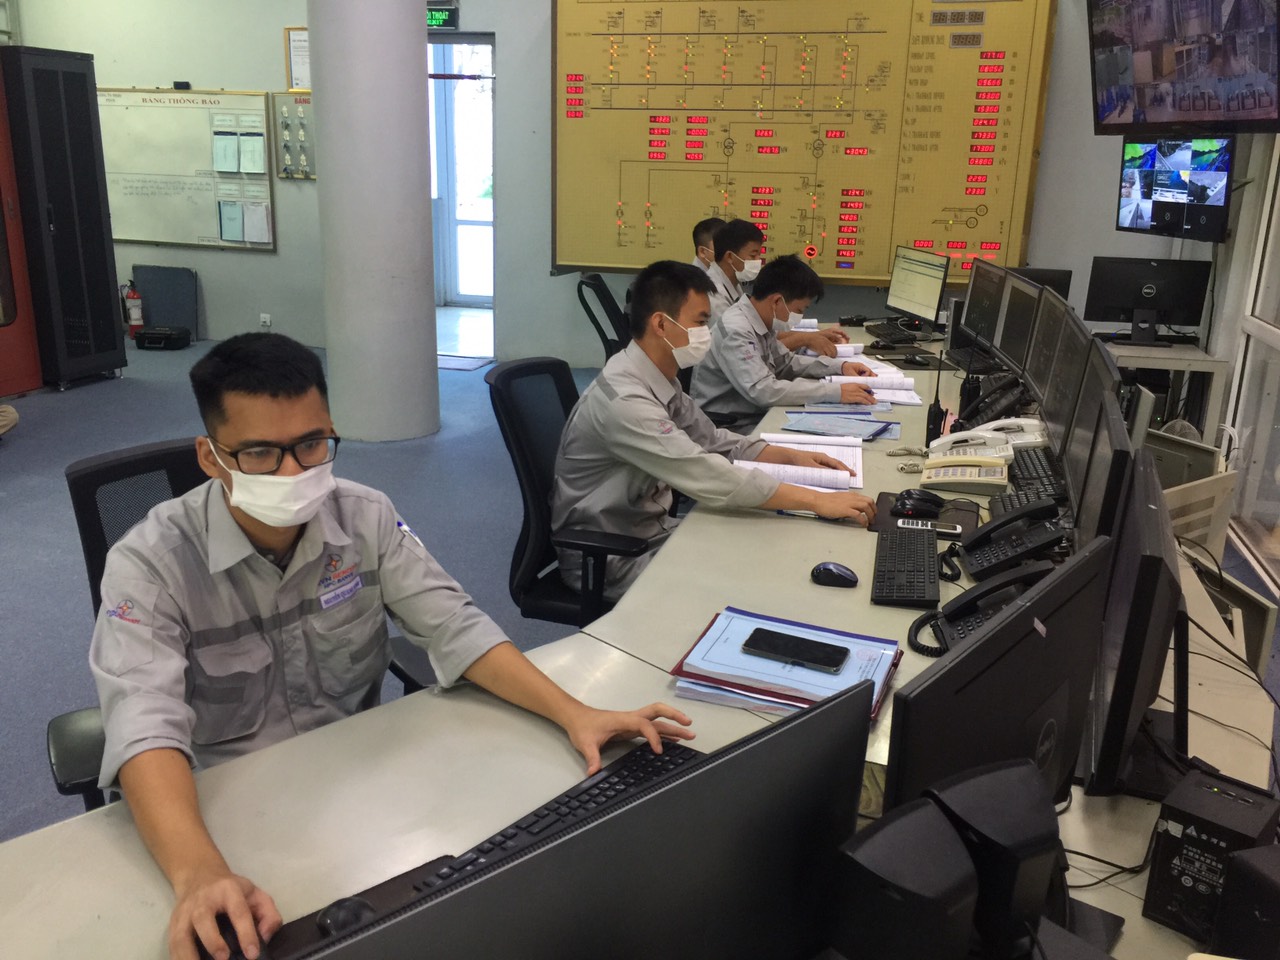 Công ty Thủy điện Bản Vẽ thực hiện biện pháp phòng, chống dịch Covid-19 khi xuất hiện các ca nhiễm Covid-19 tại tỉnh Nghệ An